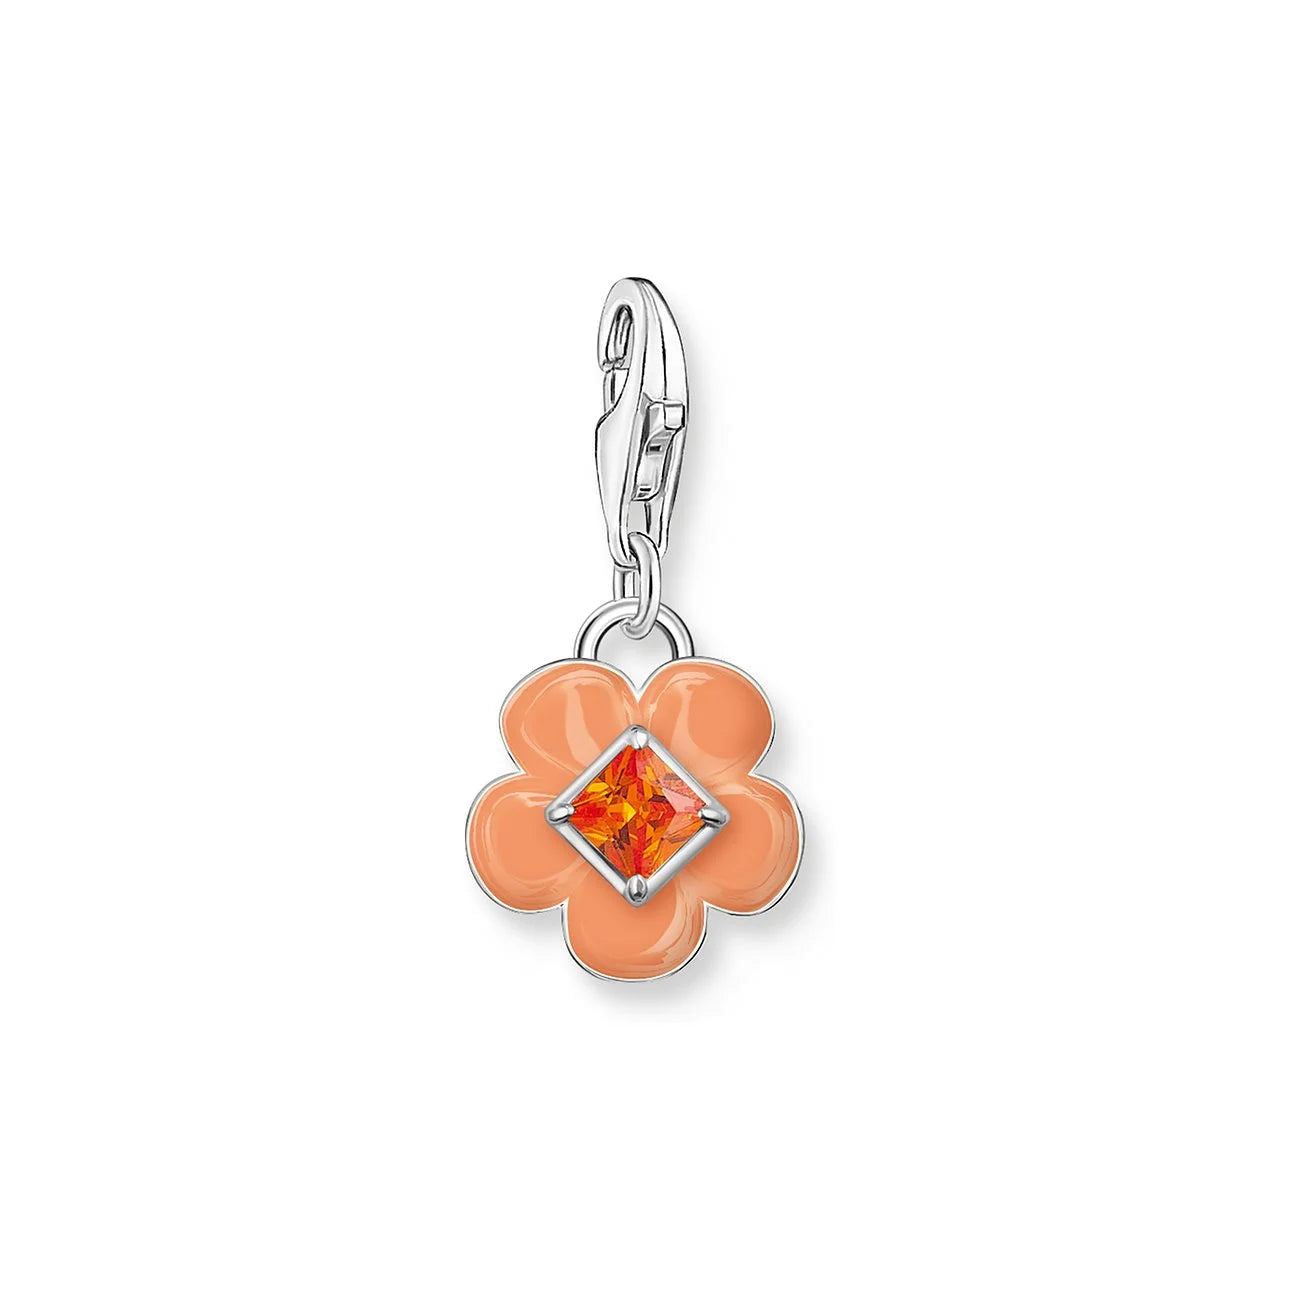 Thomas Sabo Charm-Anhänger Steinset Orange Emaille Blume - 2029-041-8